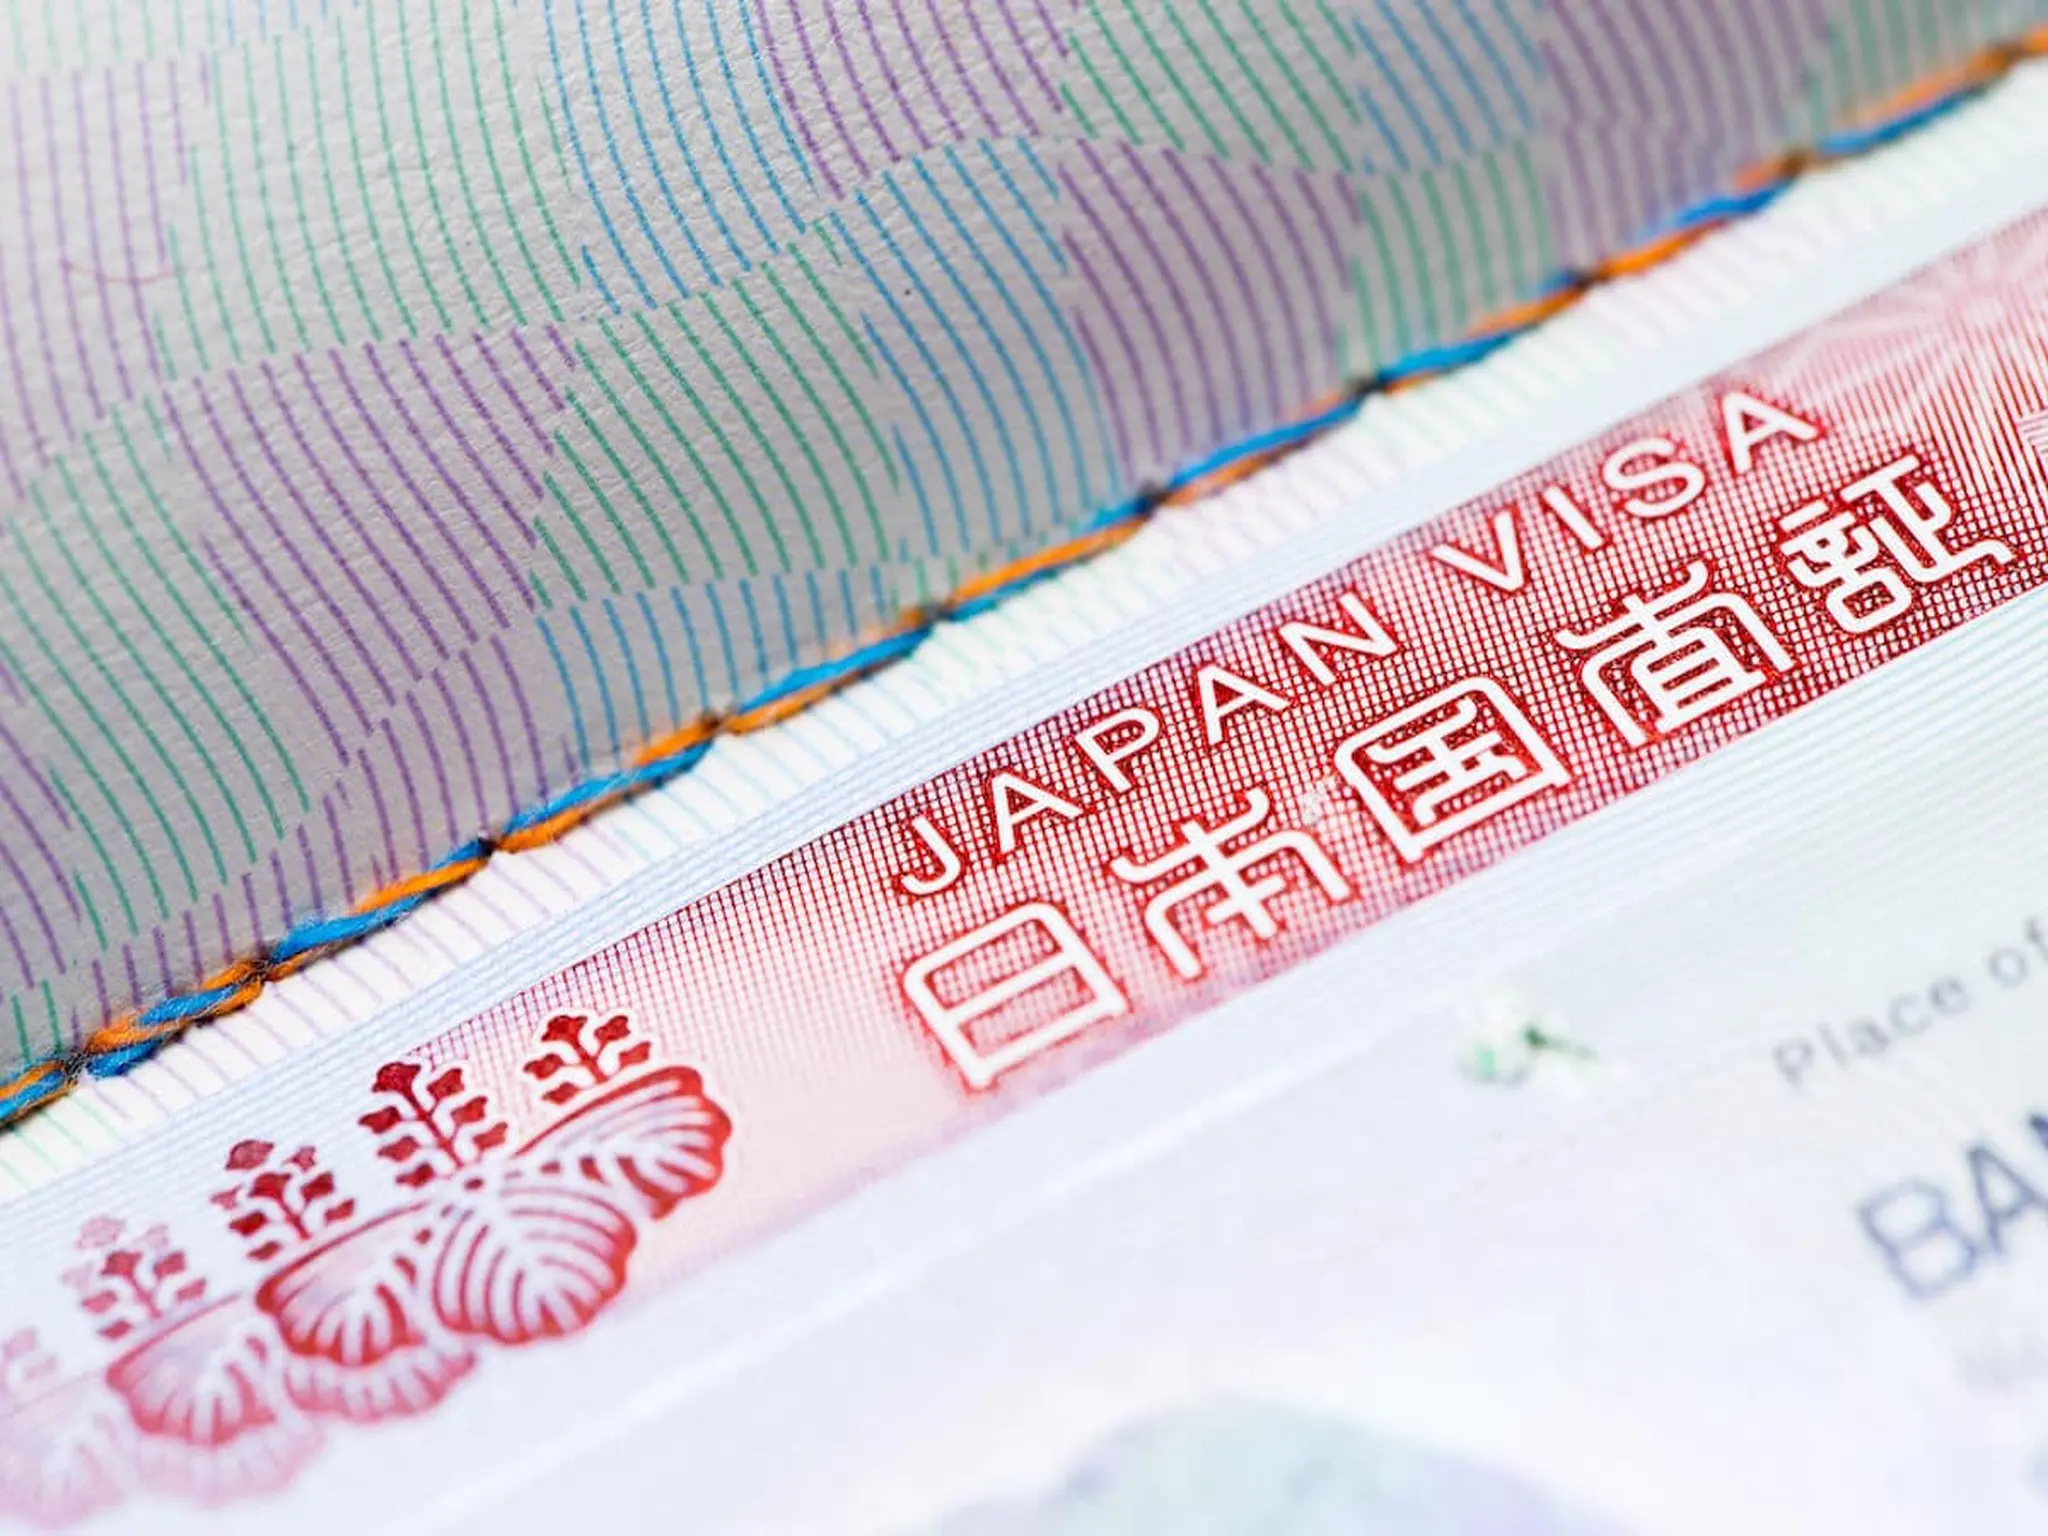 تسهيل اجراءات الحصول على تأشيرة اليابان إلكترونيا